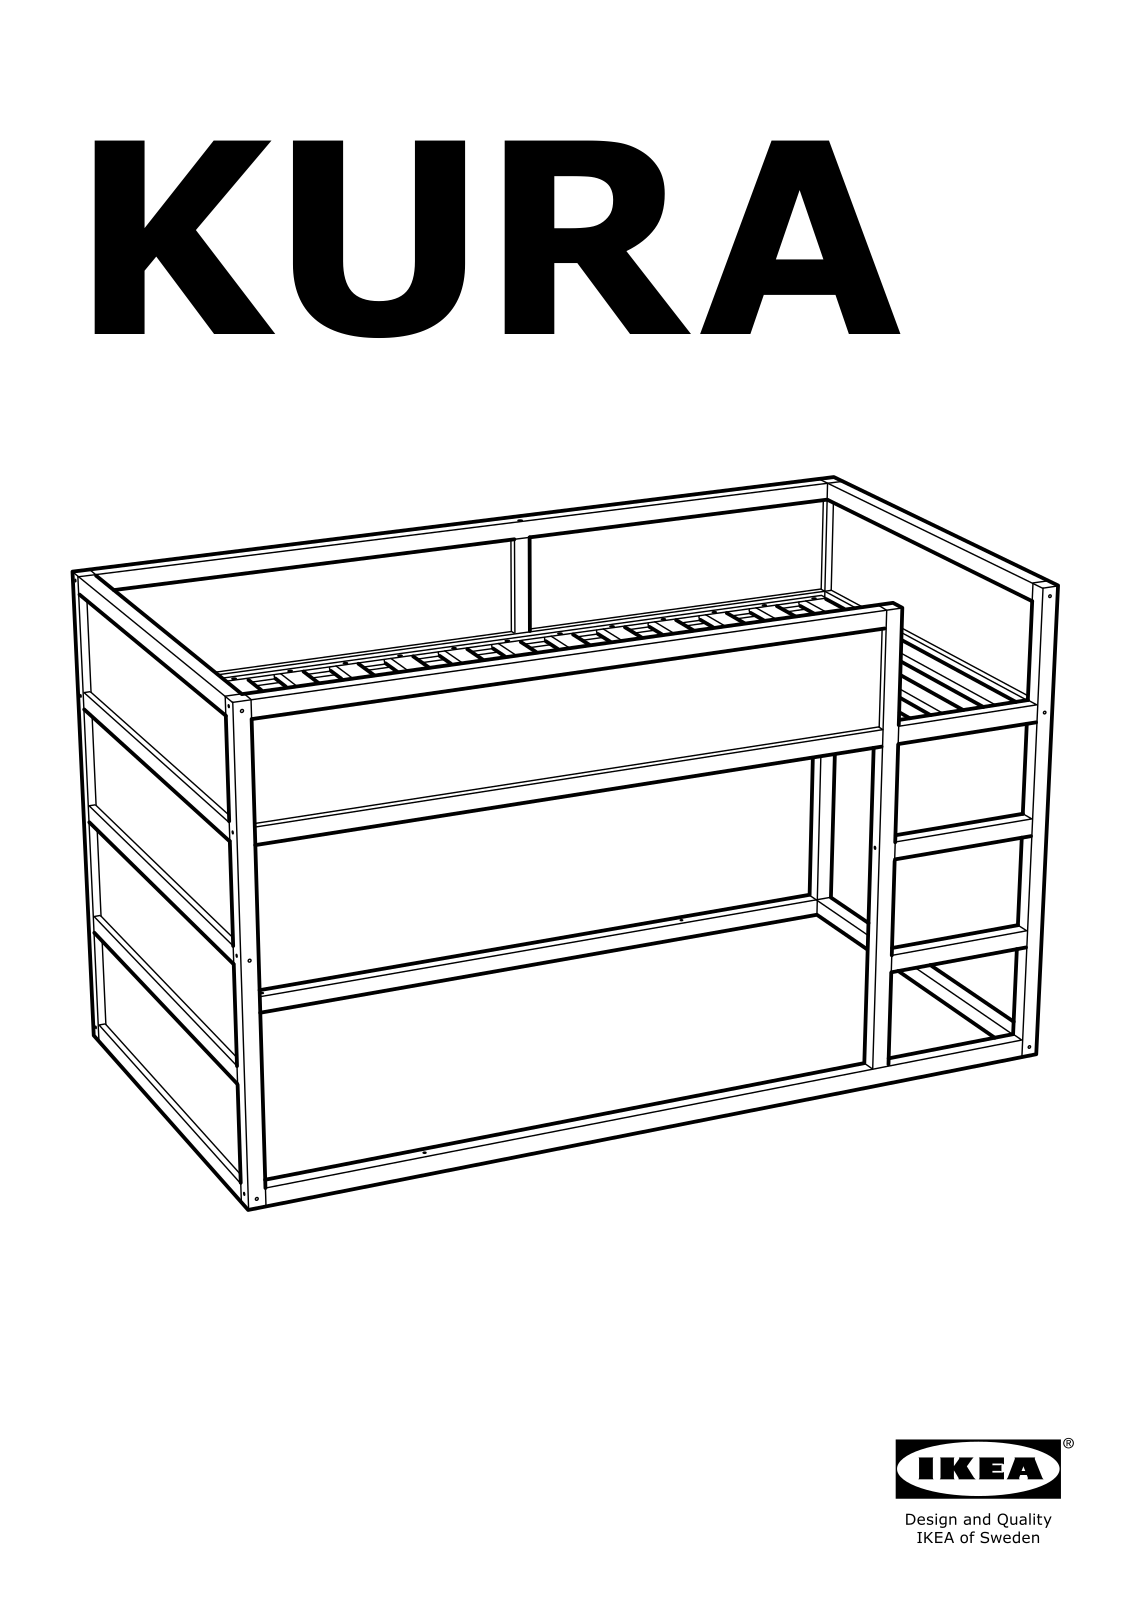 IKEA KURA User Manual